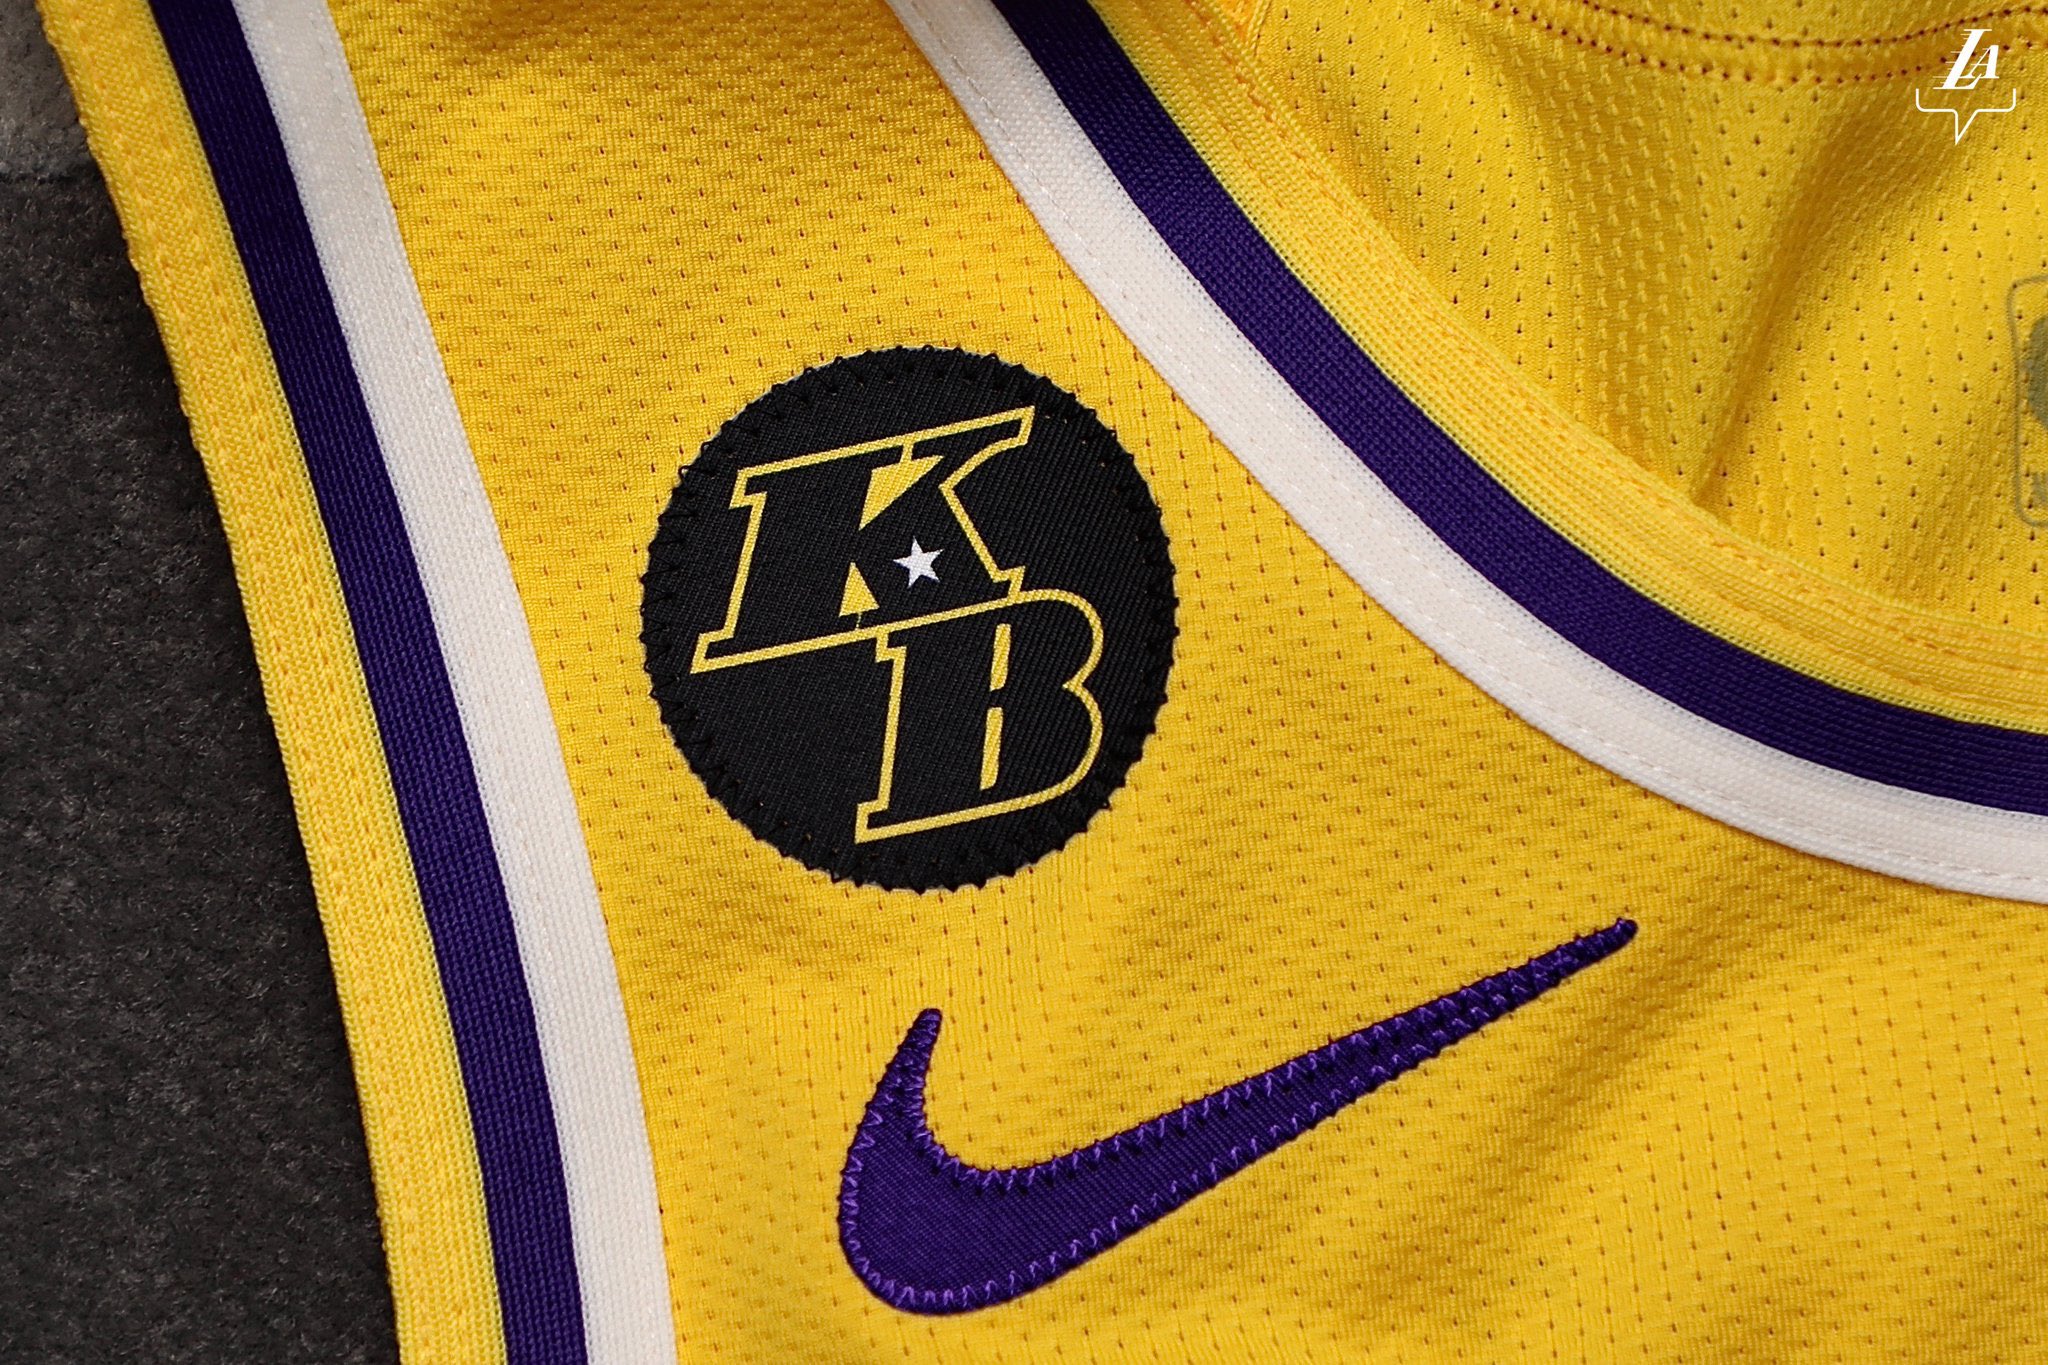 Camisa 23 | NBA on Twitter: "O uniforme do #LakeShow também está com o  patch em homenagem ao Kobe, que segundo o meu chute deve ficar até o final  da temporada. A